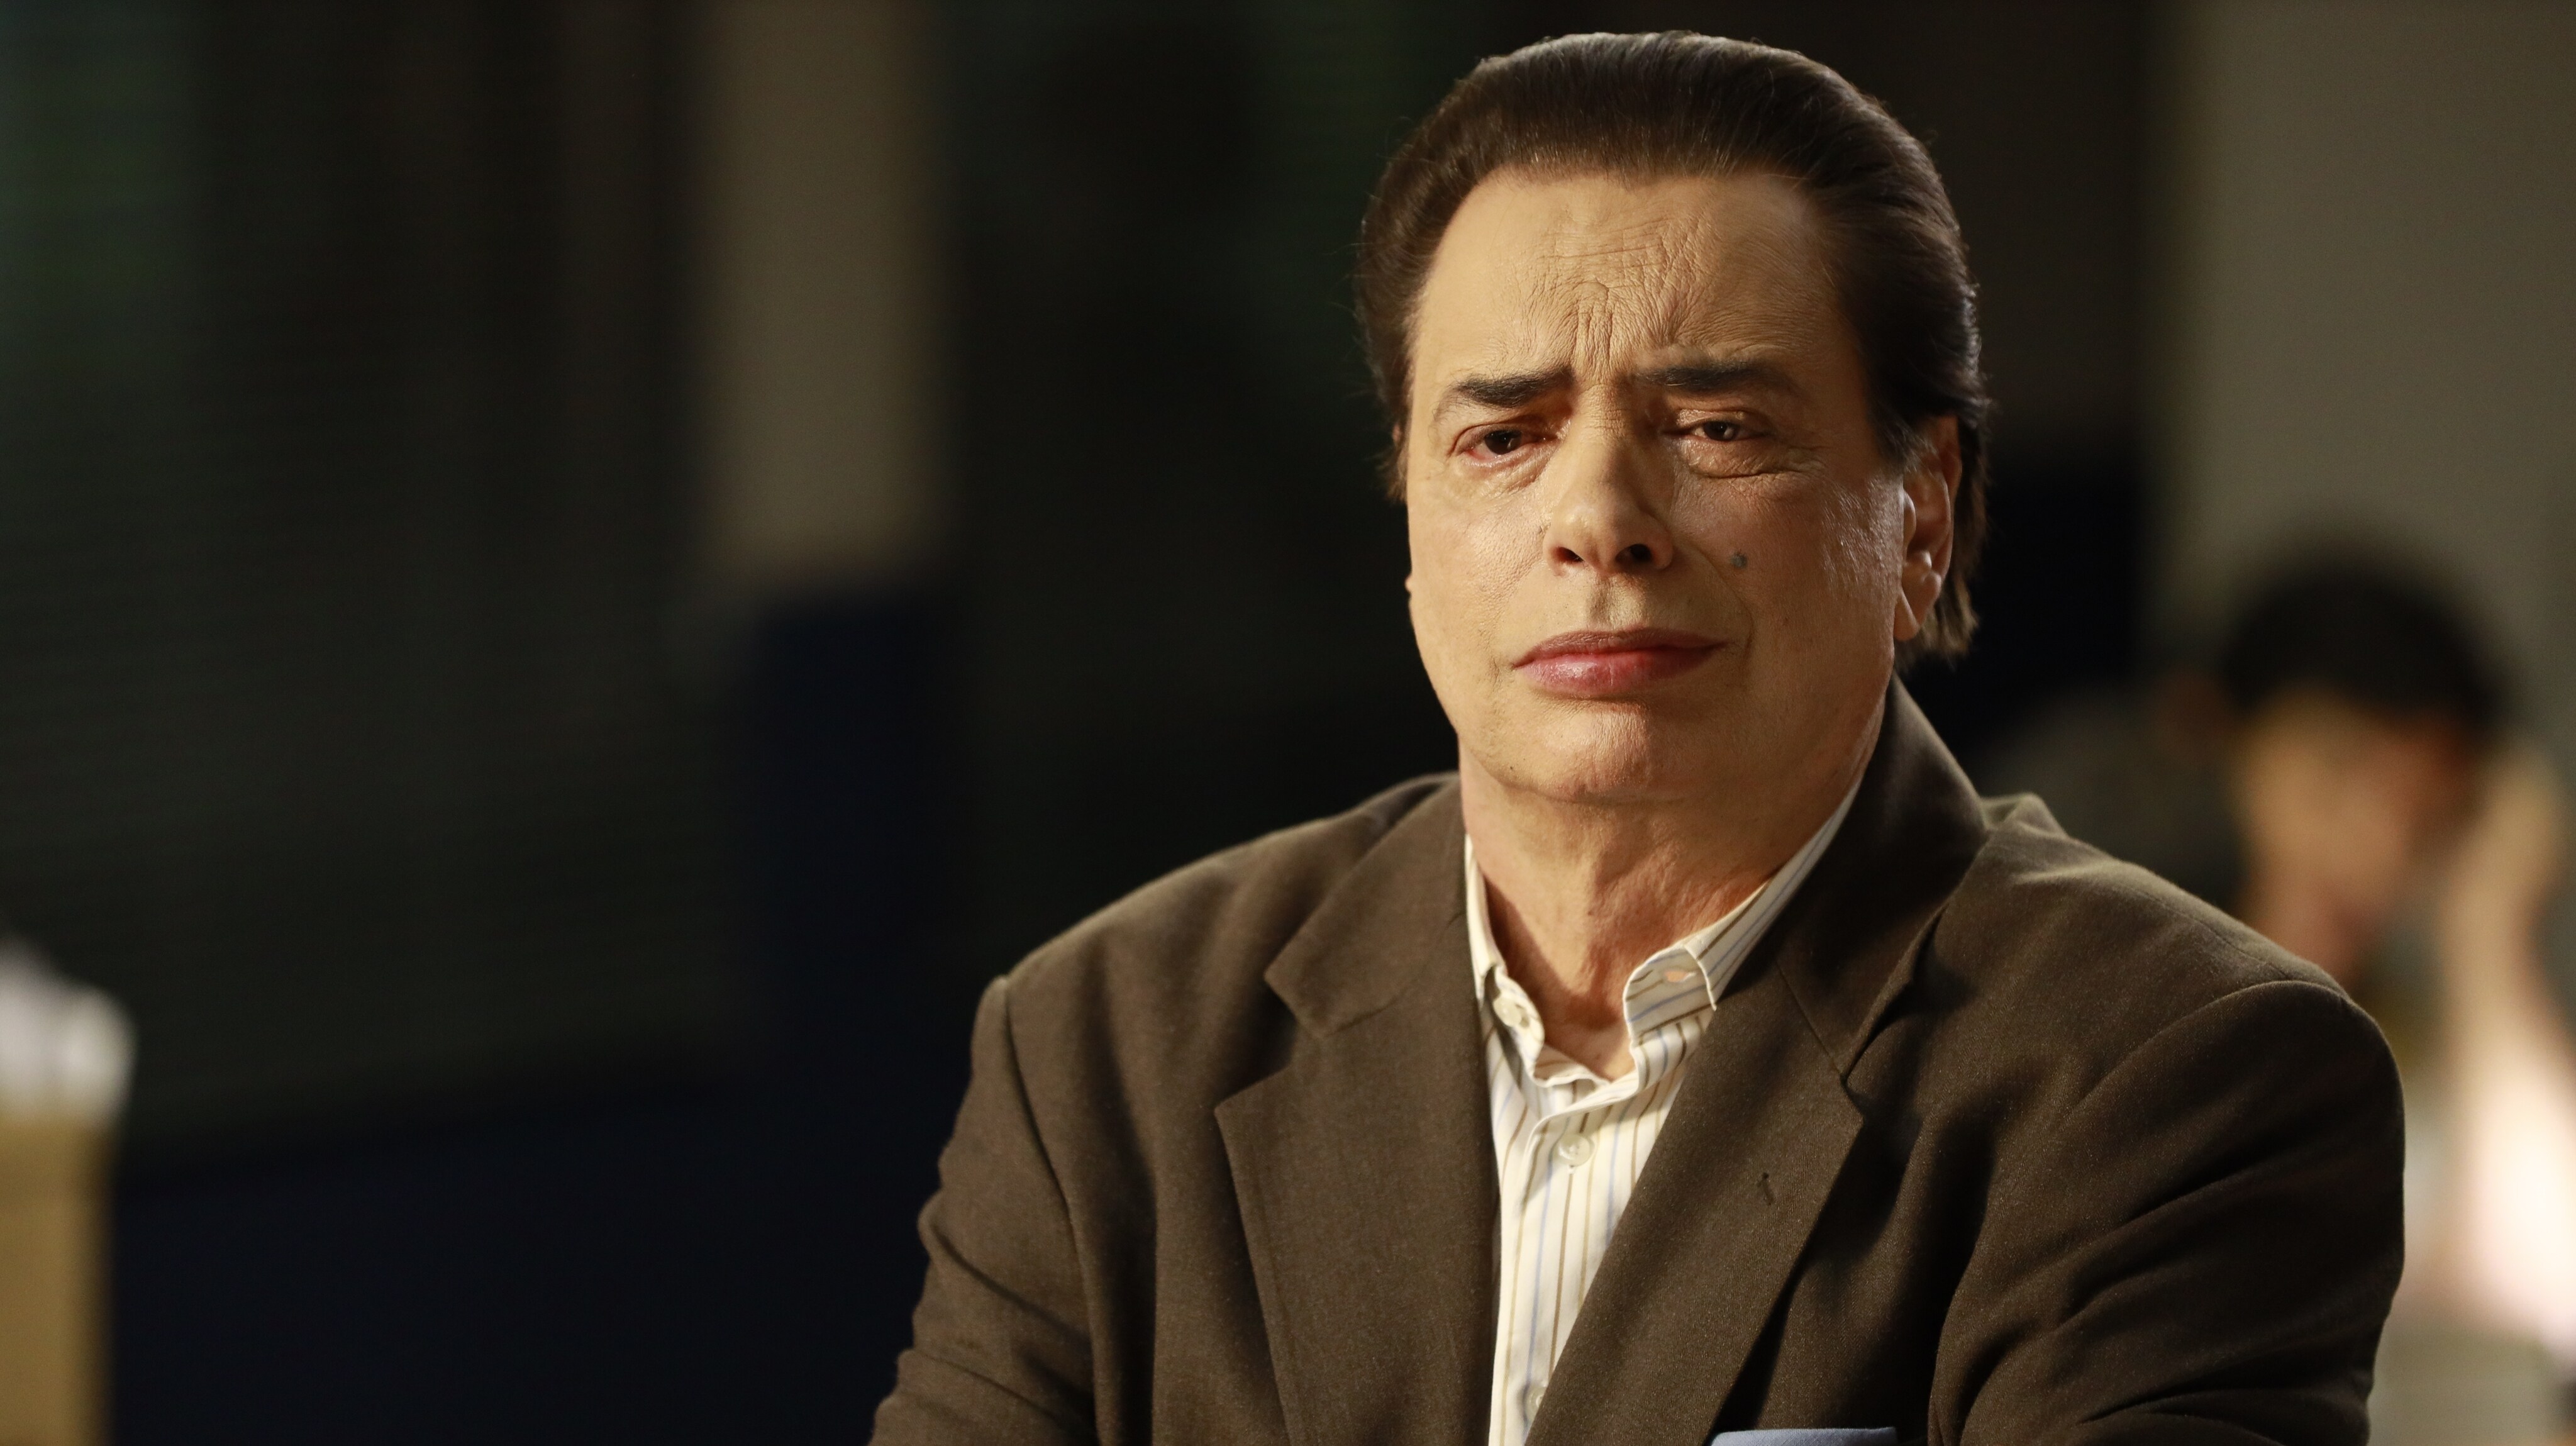 'O Rei da TV': ator José Rubens Chachá, que interpreta Silvio Santos, conta suas impressões sobre a 2ª temporada